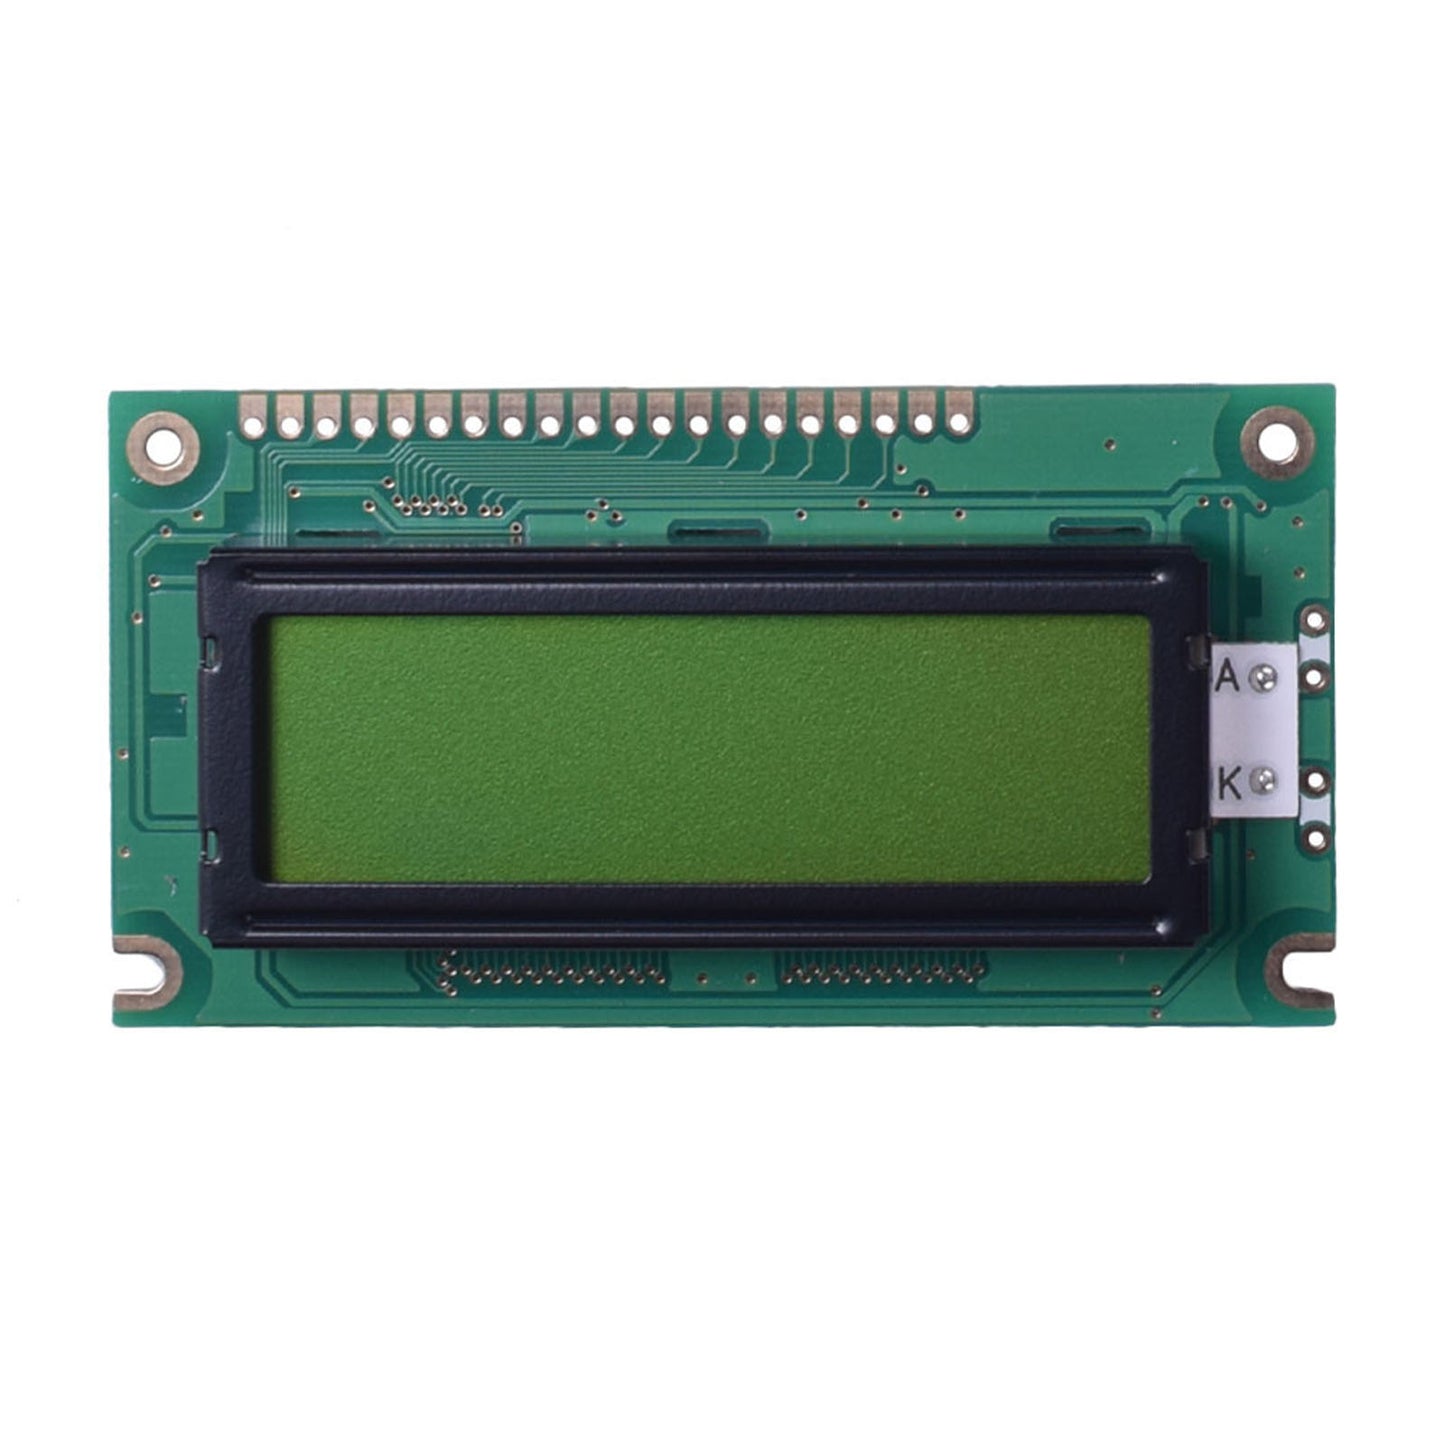 DisplayModule 2.47" 122x32 Graphic LCD - MCU